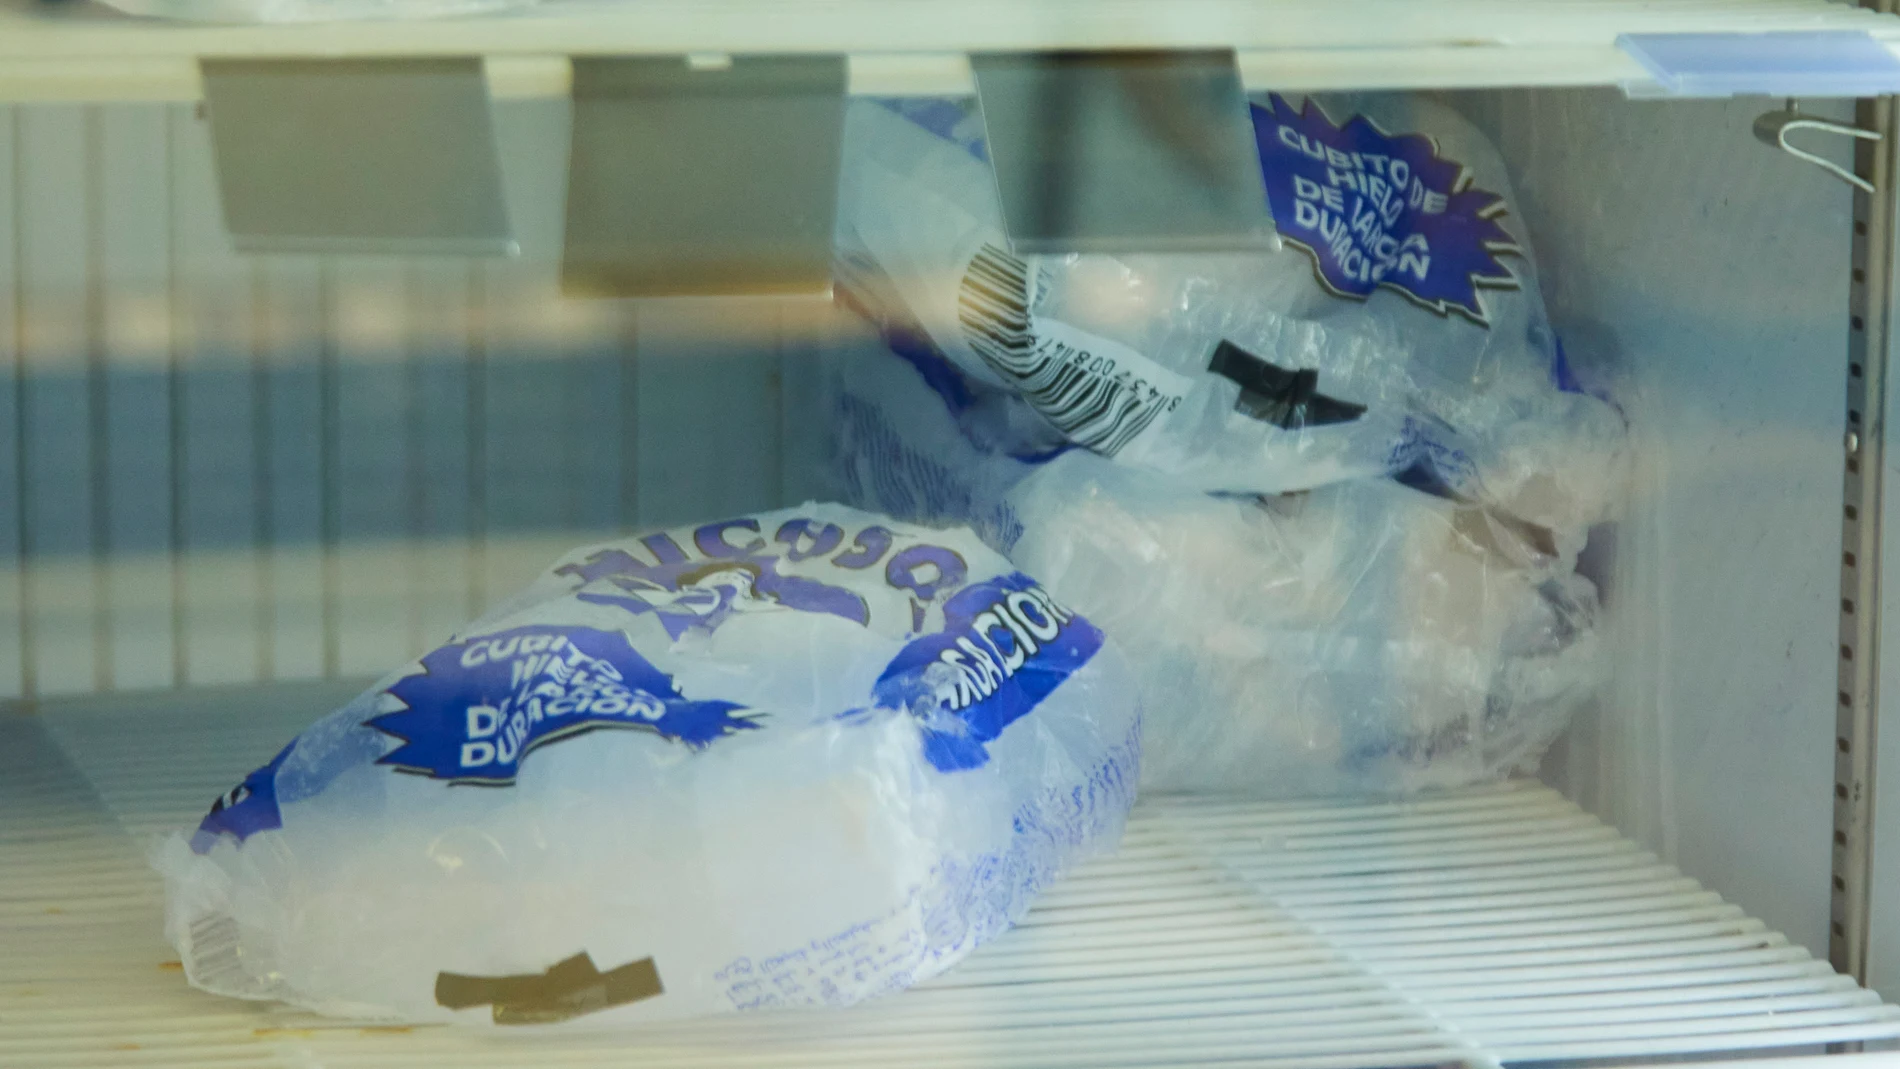 Detalle de una bolsa de cubos de hielo en un supermercado tras la falta de éstos por la gran demanda, a 4 de agosto de 2022 en Sevilla (Andalucía, España)